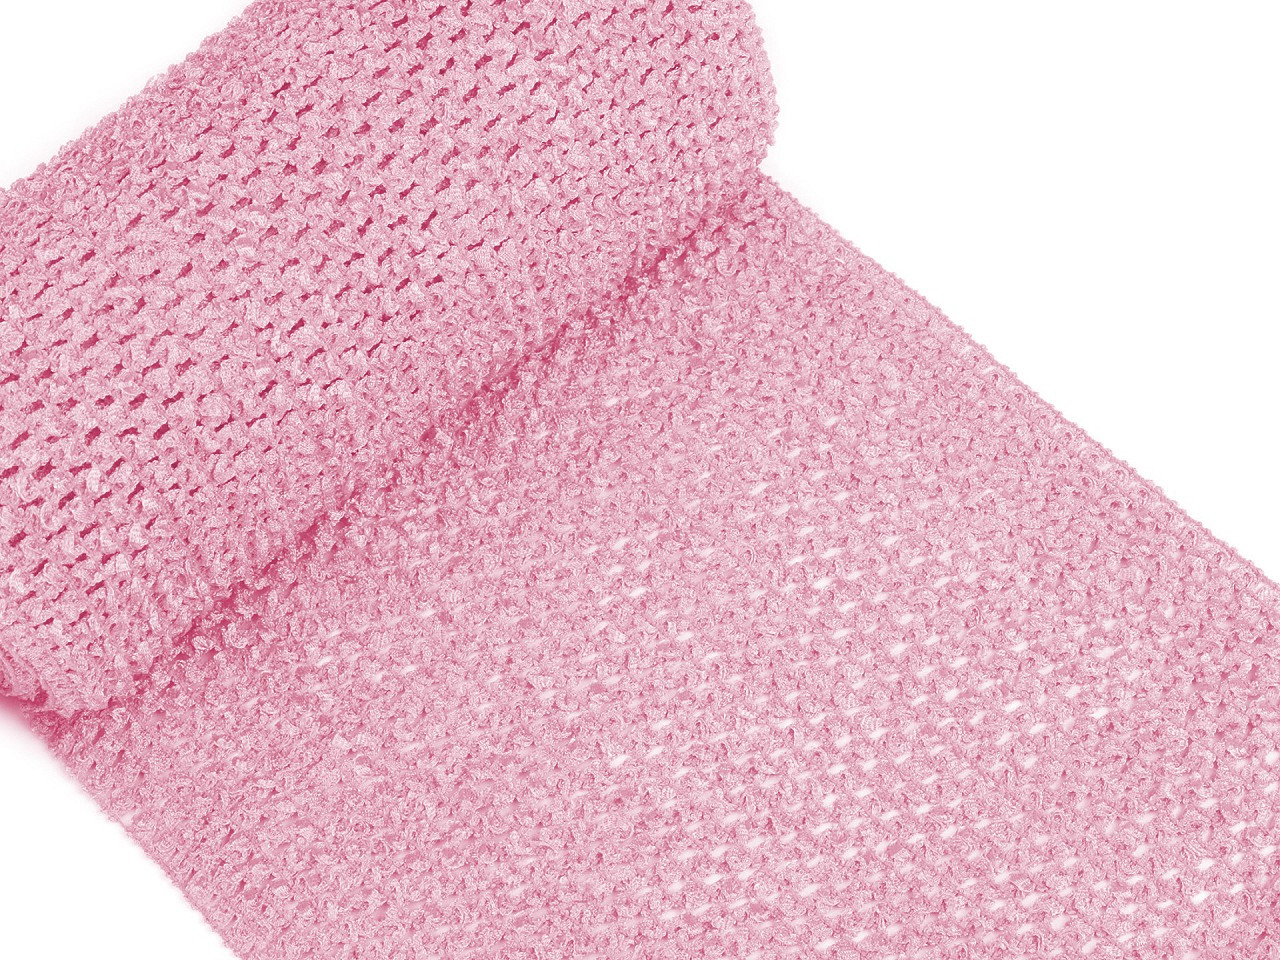 Síťovaná pruženka šíře 24-25 cm pro výrobu tutu sukýnek, barva 1 růžová sv.